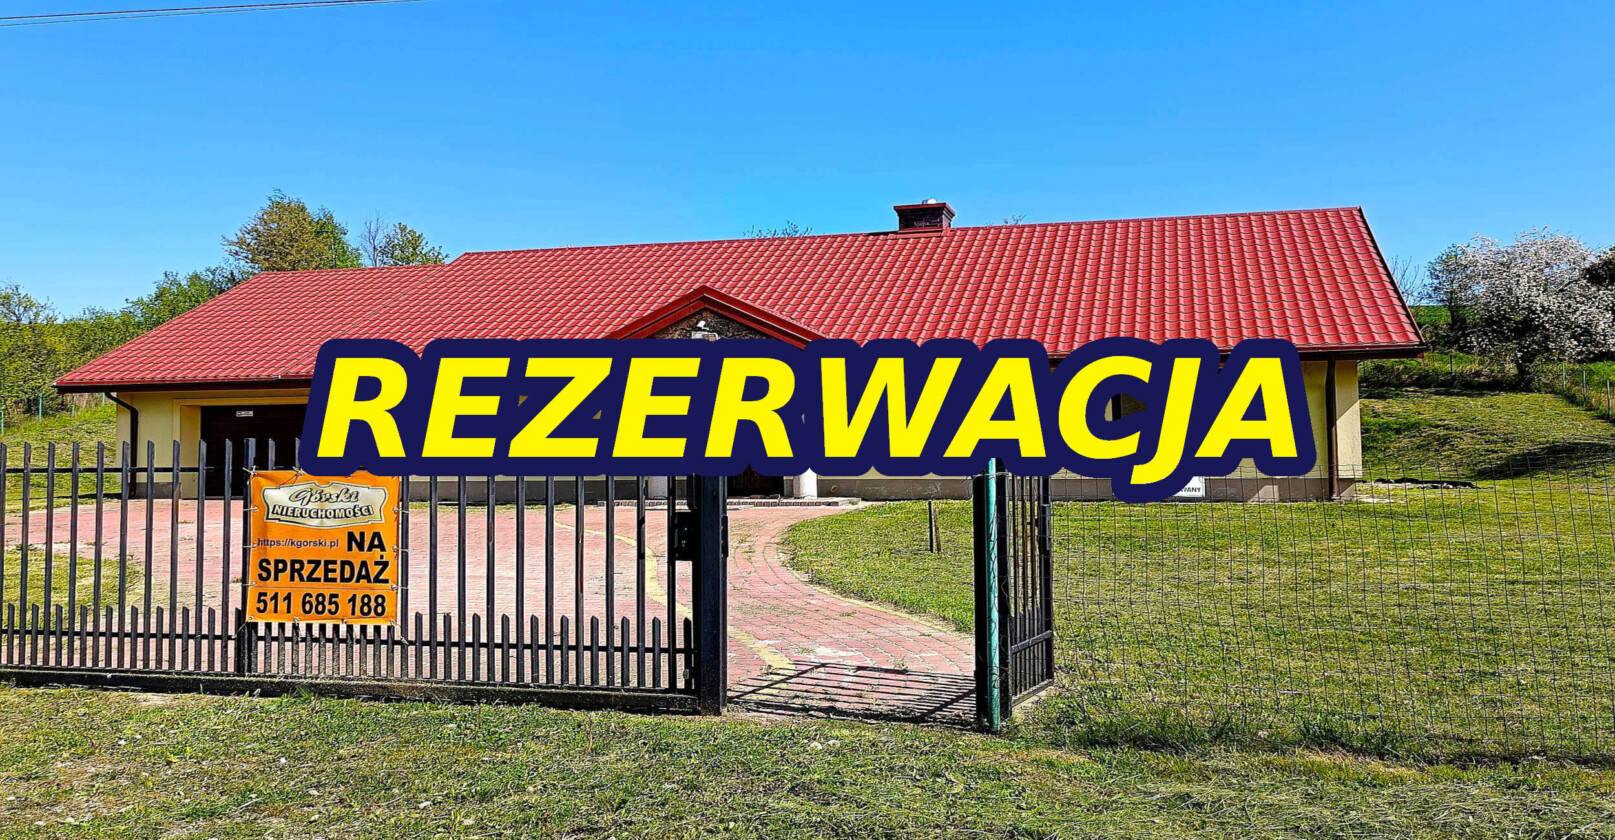 REZERWACJA - Nieruchomości Krzysztof Górski Zamość, biuro nieruchomości, domy, mieszkania, działki, lokale, sprzedaż nieruchomości, wynajem nieruchomości